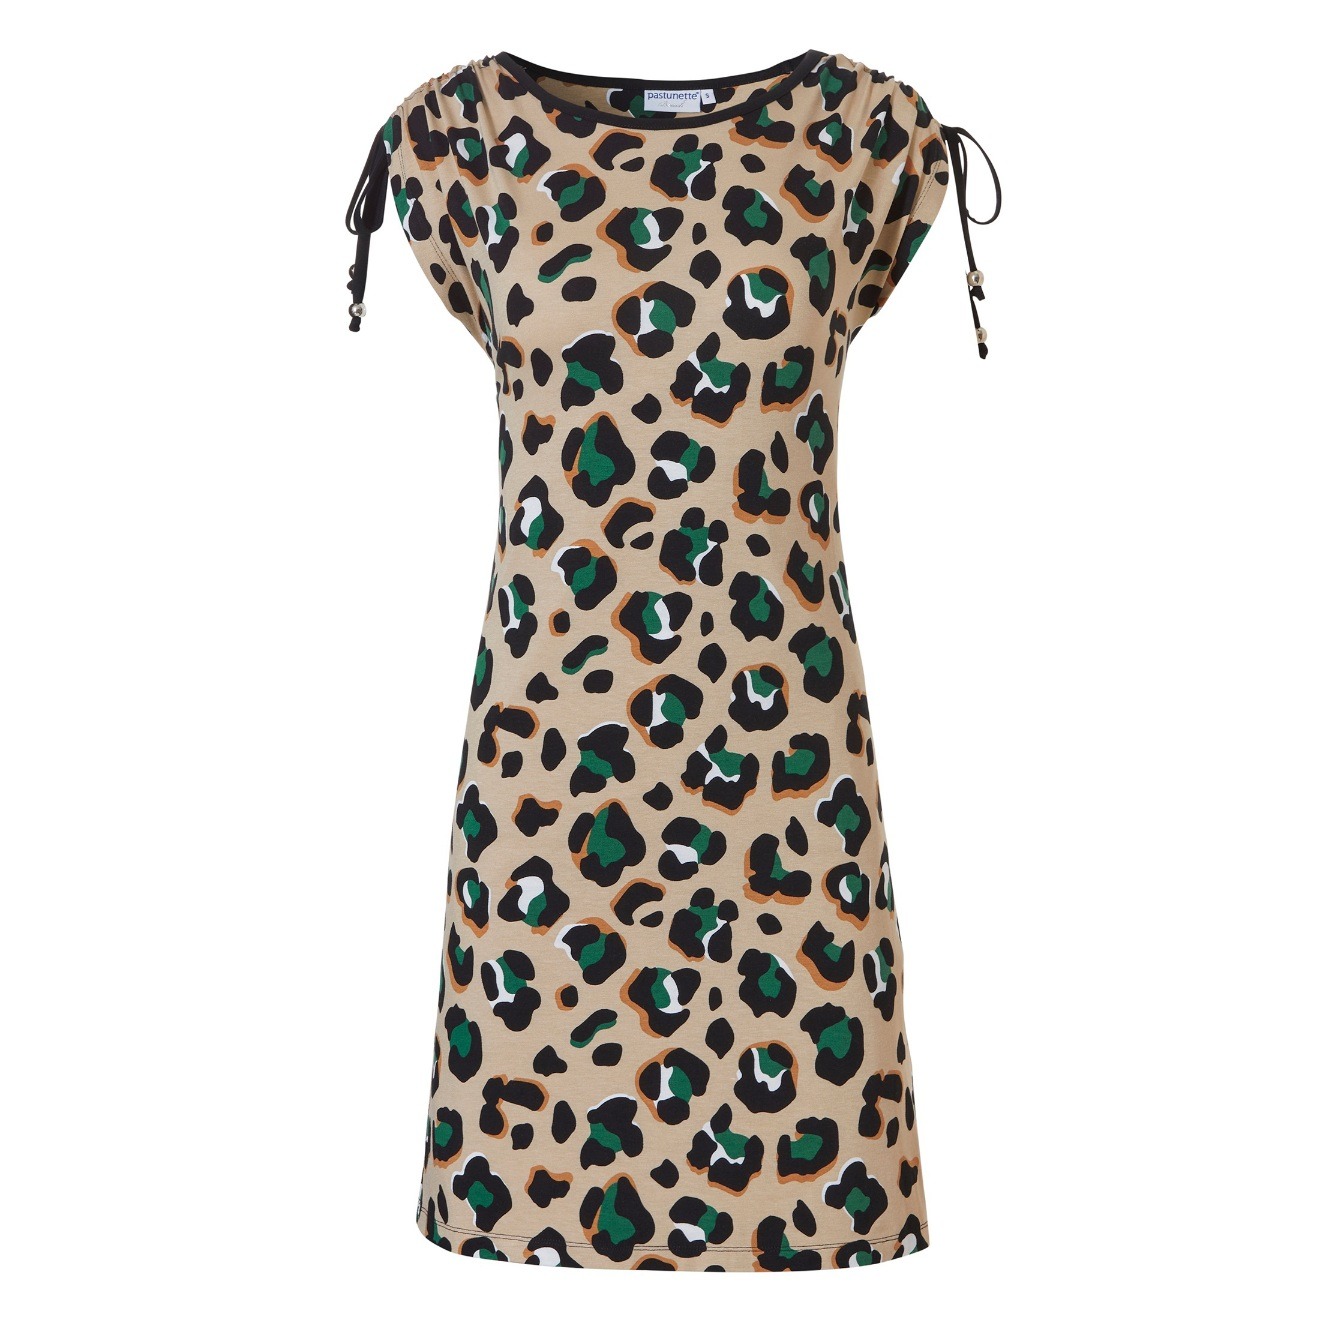 Duftiges Sommerkleid in attraktivem Leoprint mit grün bei uns im Onlineshop oder in der Damenboutique in Winnenden im Rems Murr Kreis einkaufen